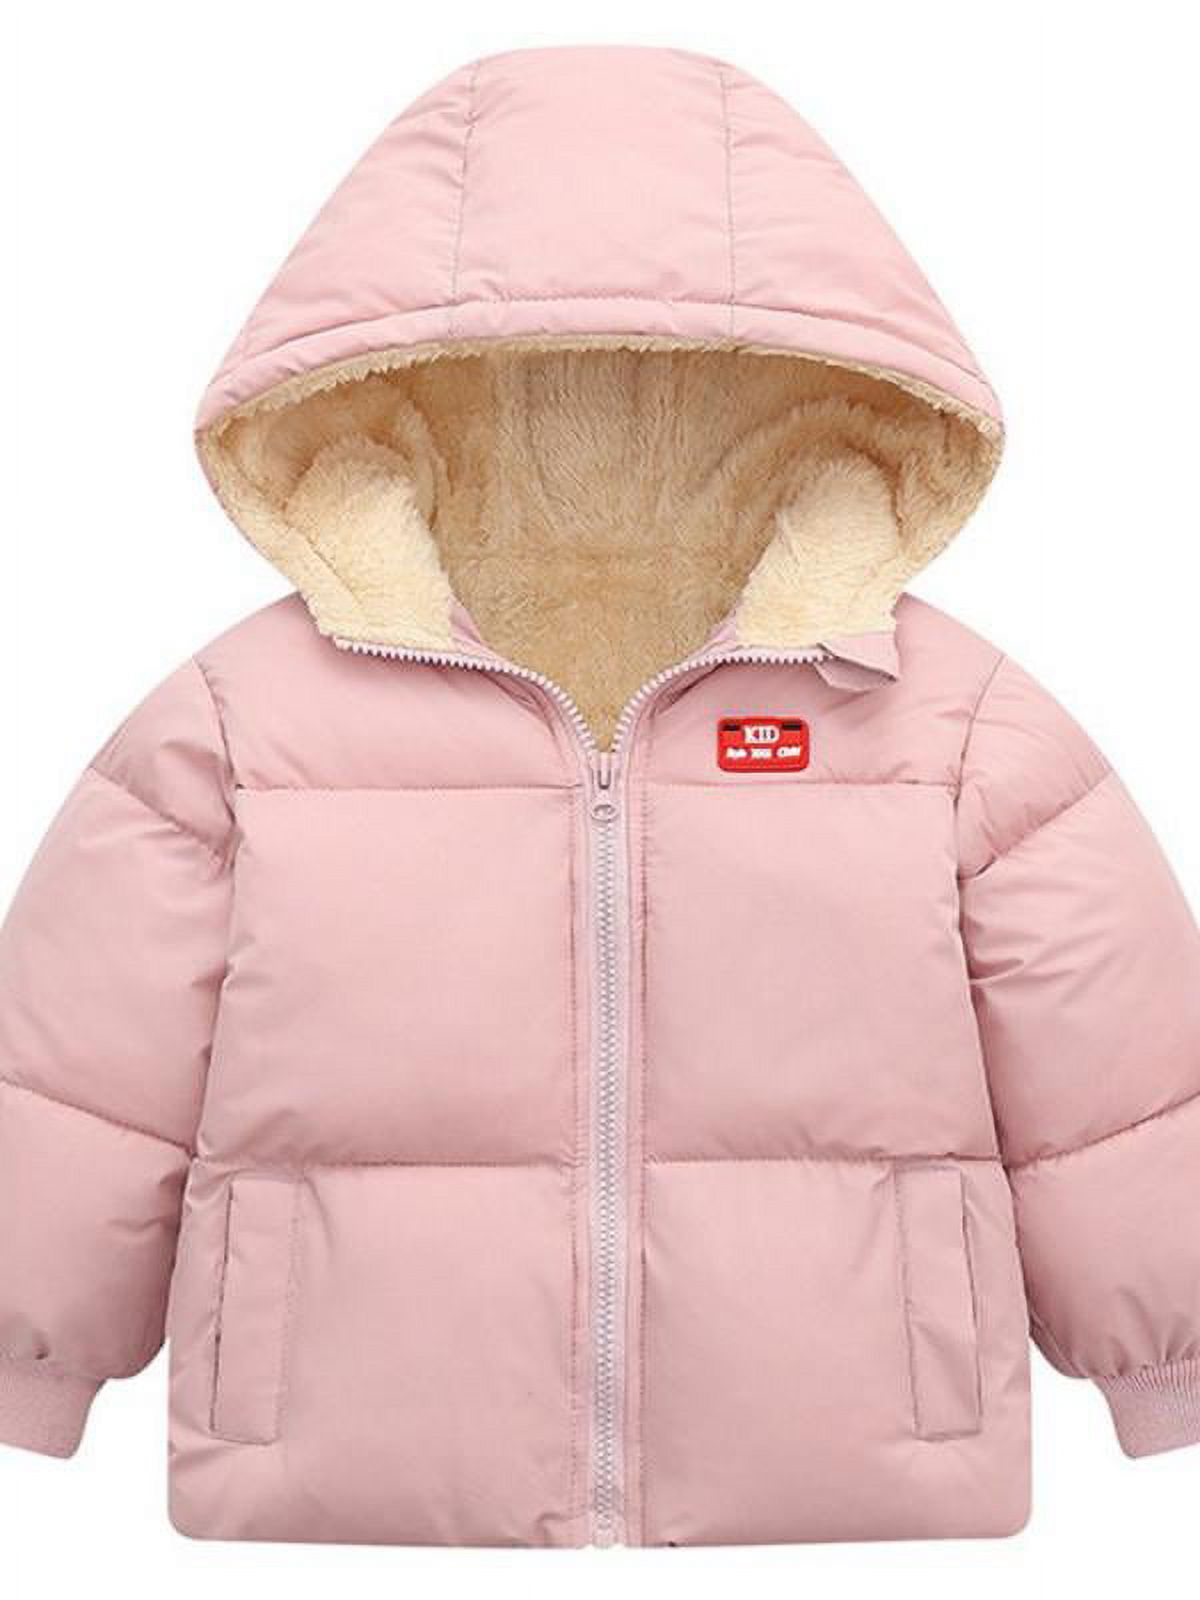 Topumt Boys Girls Hooded Down Jacket Winter Warm Fleece Coat Windproof Zipper Puffer Outerwear 1T-6T - image 1 of 7